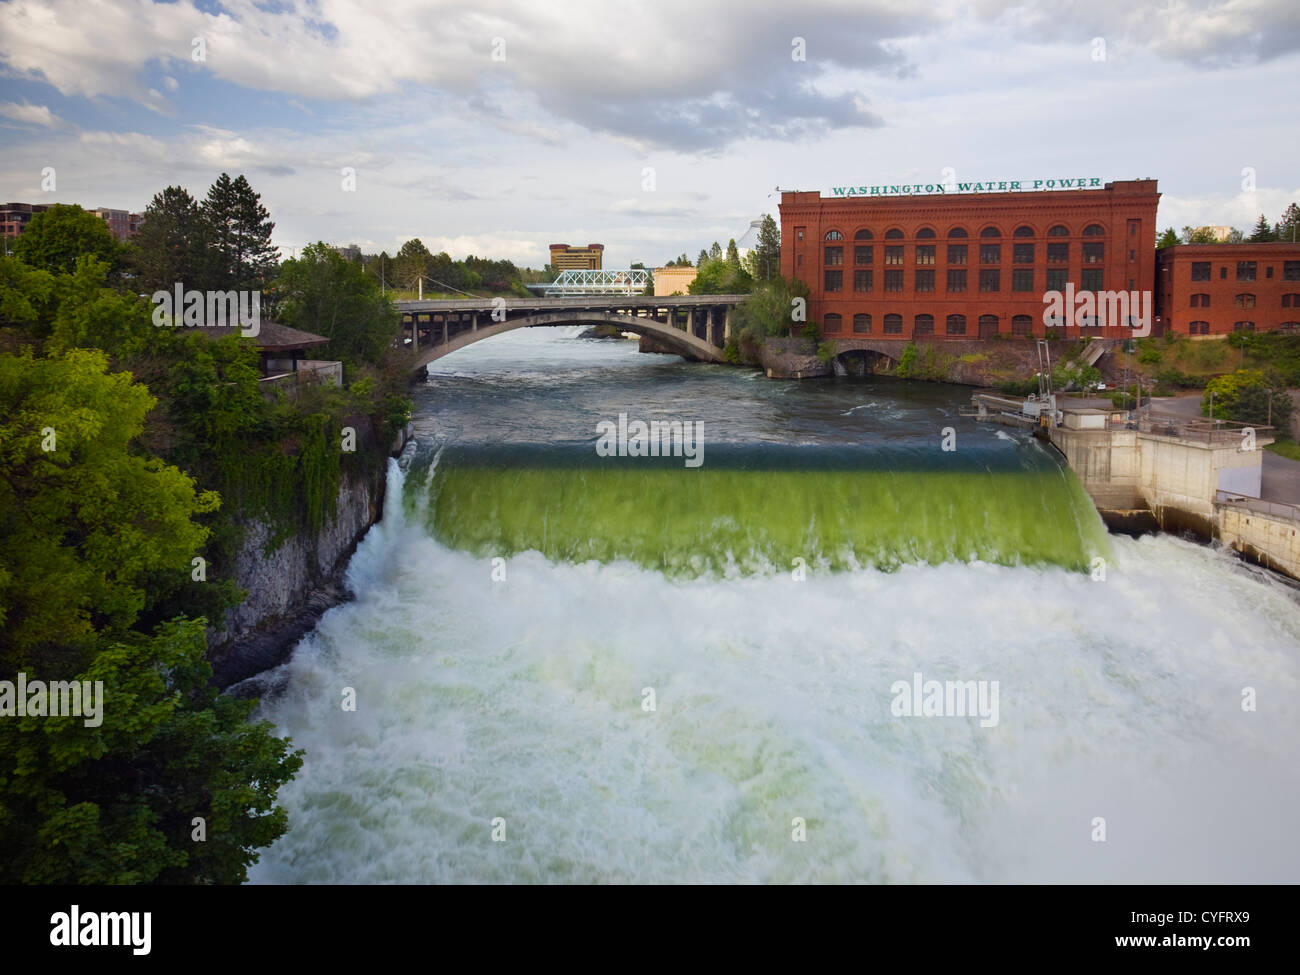 WASHINGTON - El Río Spokane rugiendo a través de Riverfront Park y pase el agua Washington planta eléctrica en el centro de la ciudad de Spokane. Foto de stock